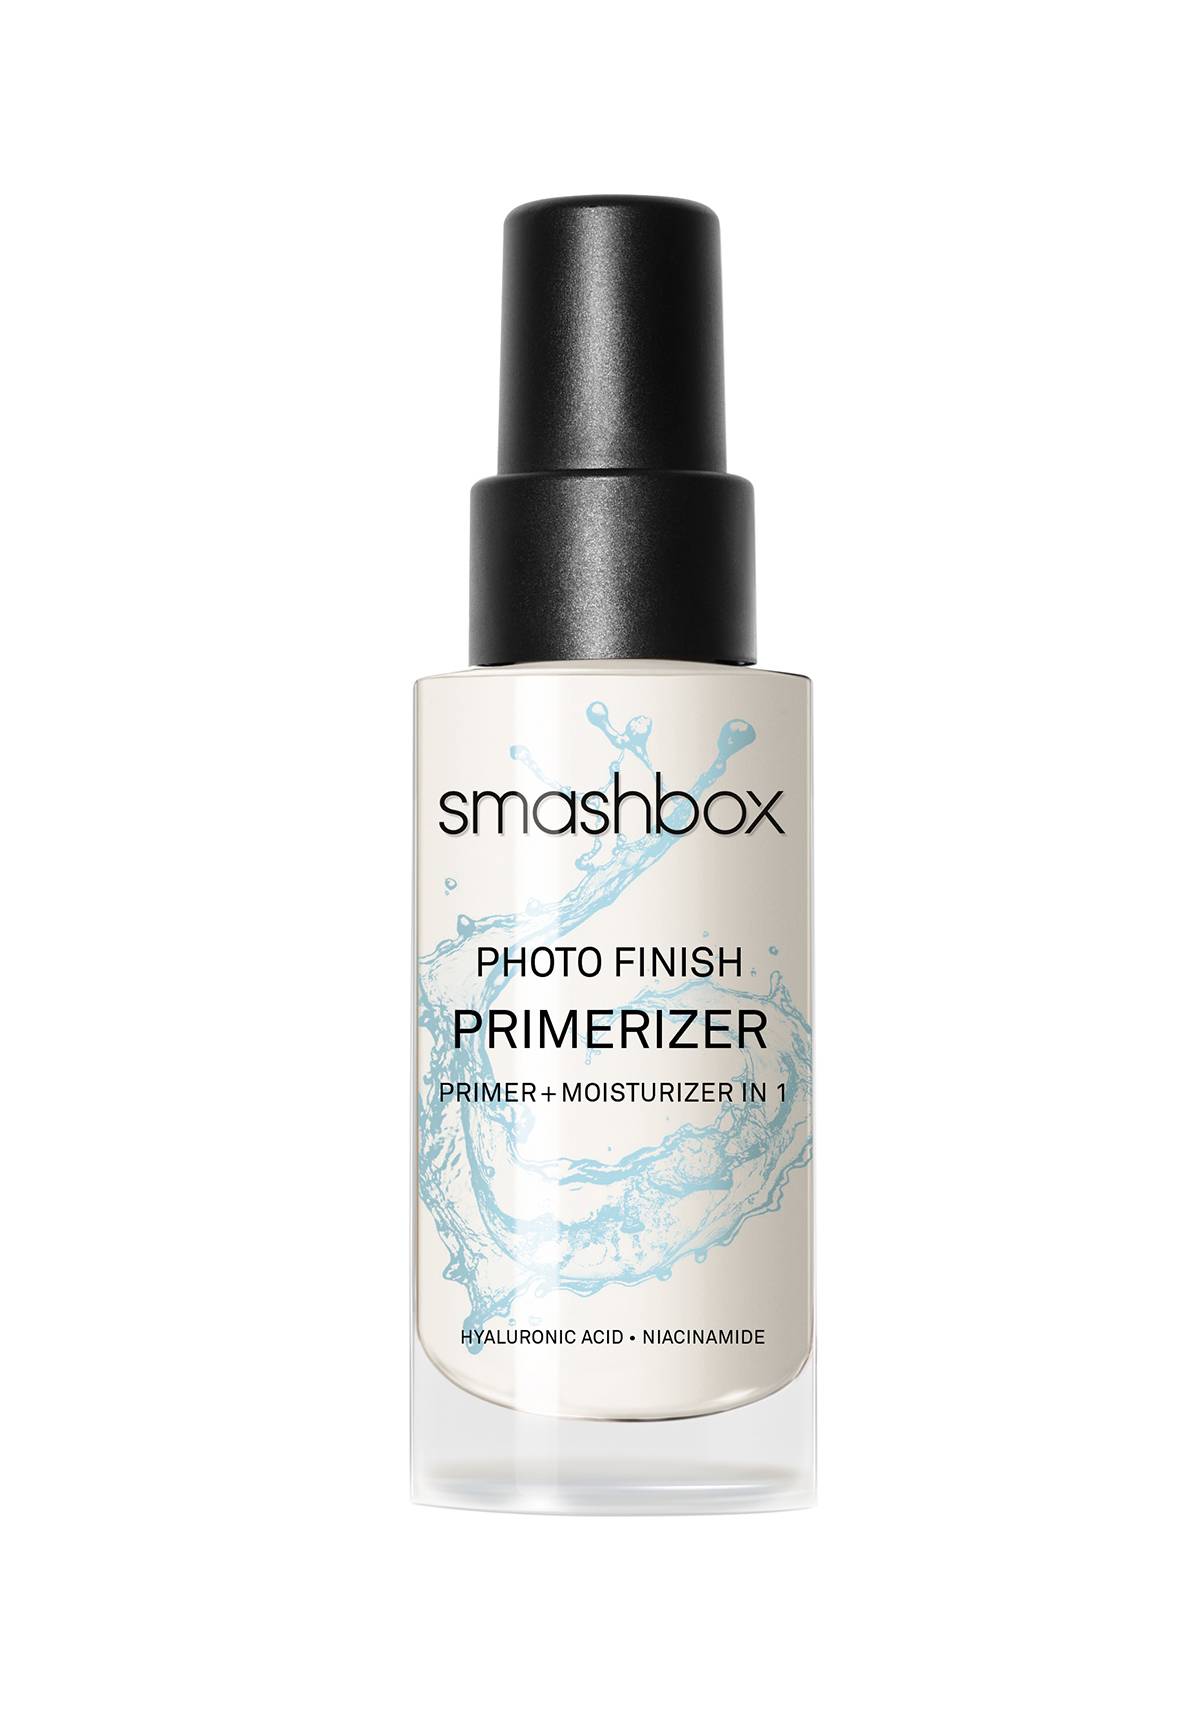 Photo finish primerizer, Smashbox